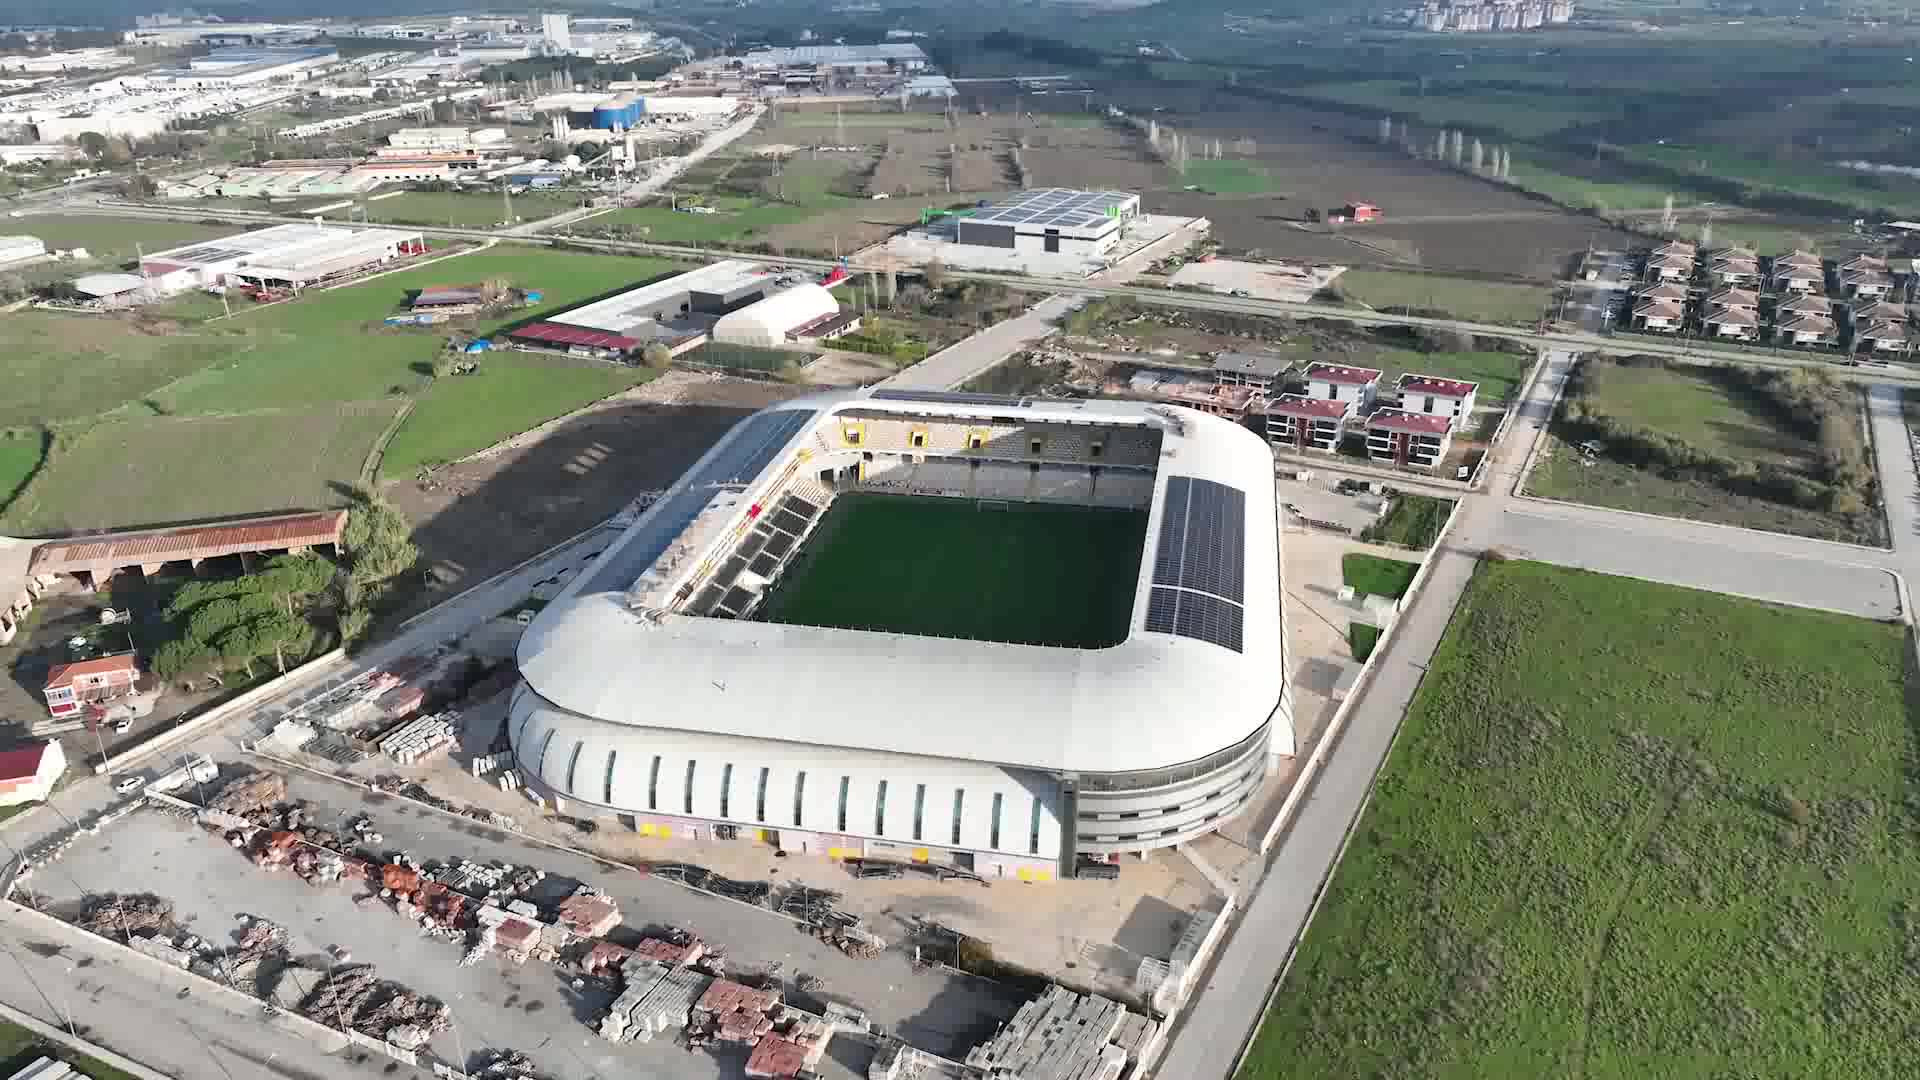 Tire'de Atatürk Stadyumu’nun çatısına GES kurulacak